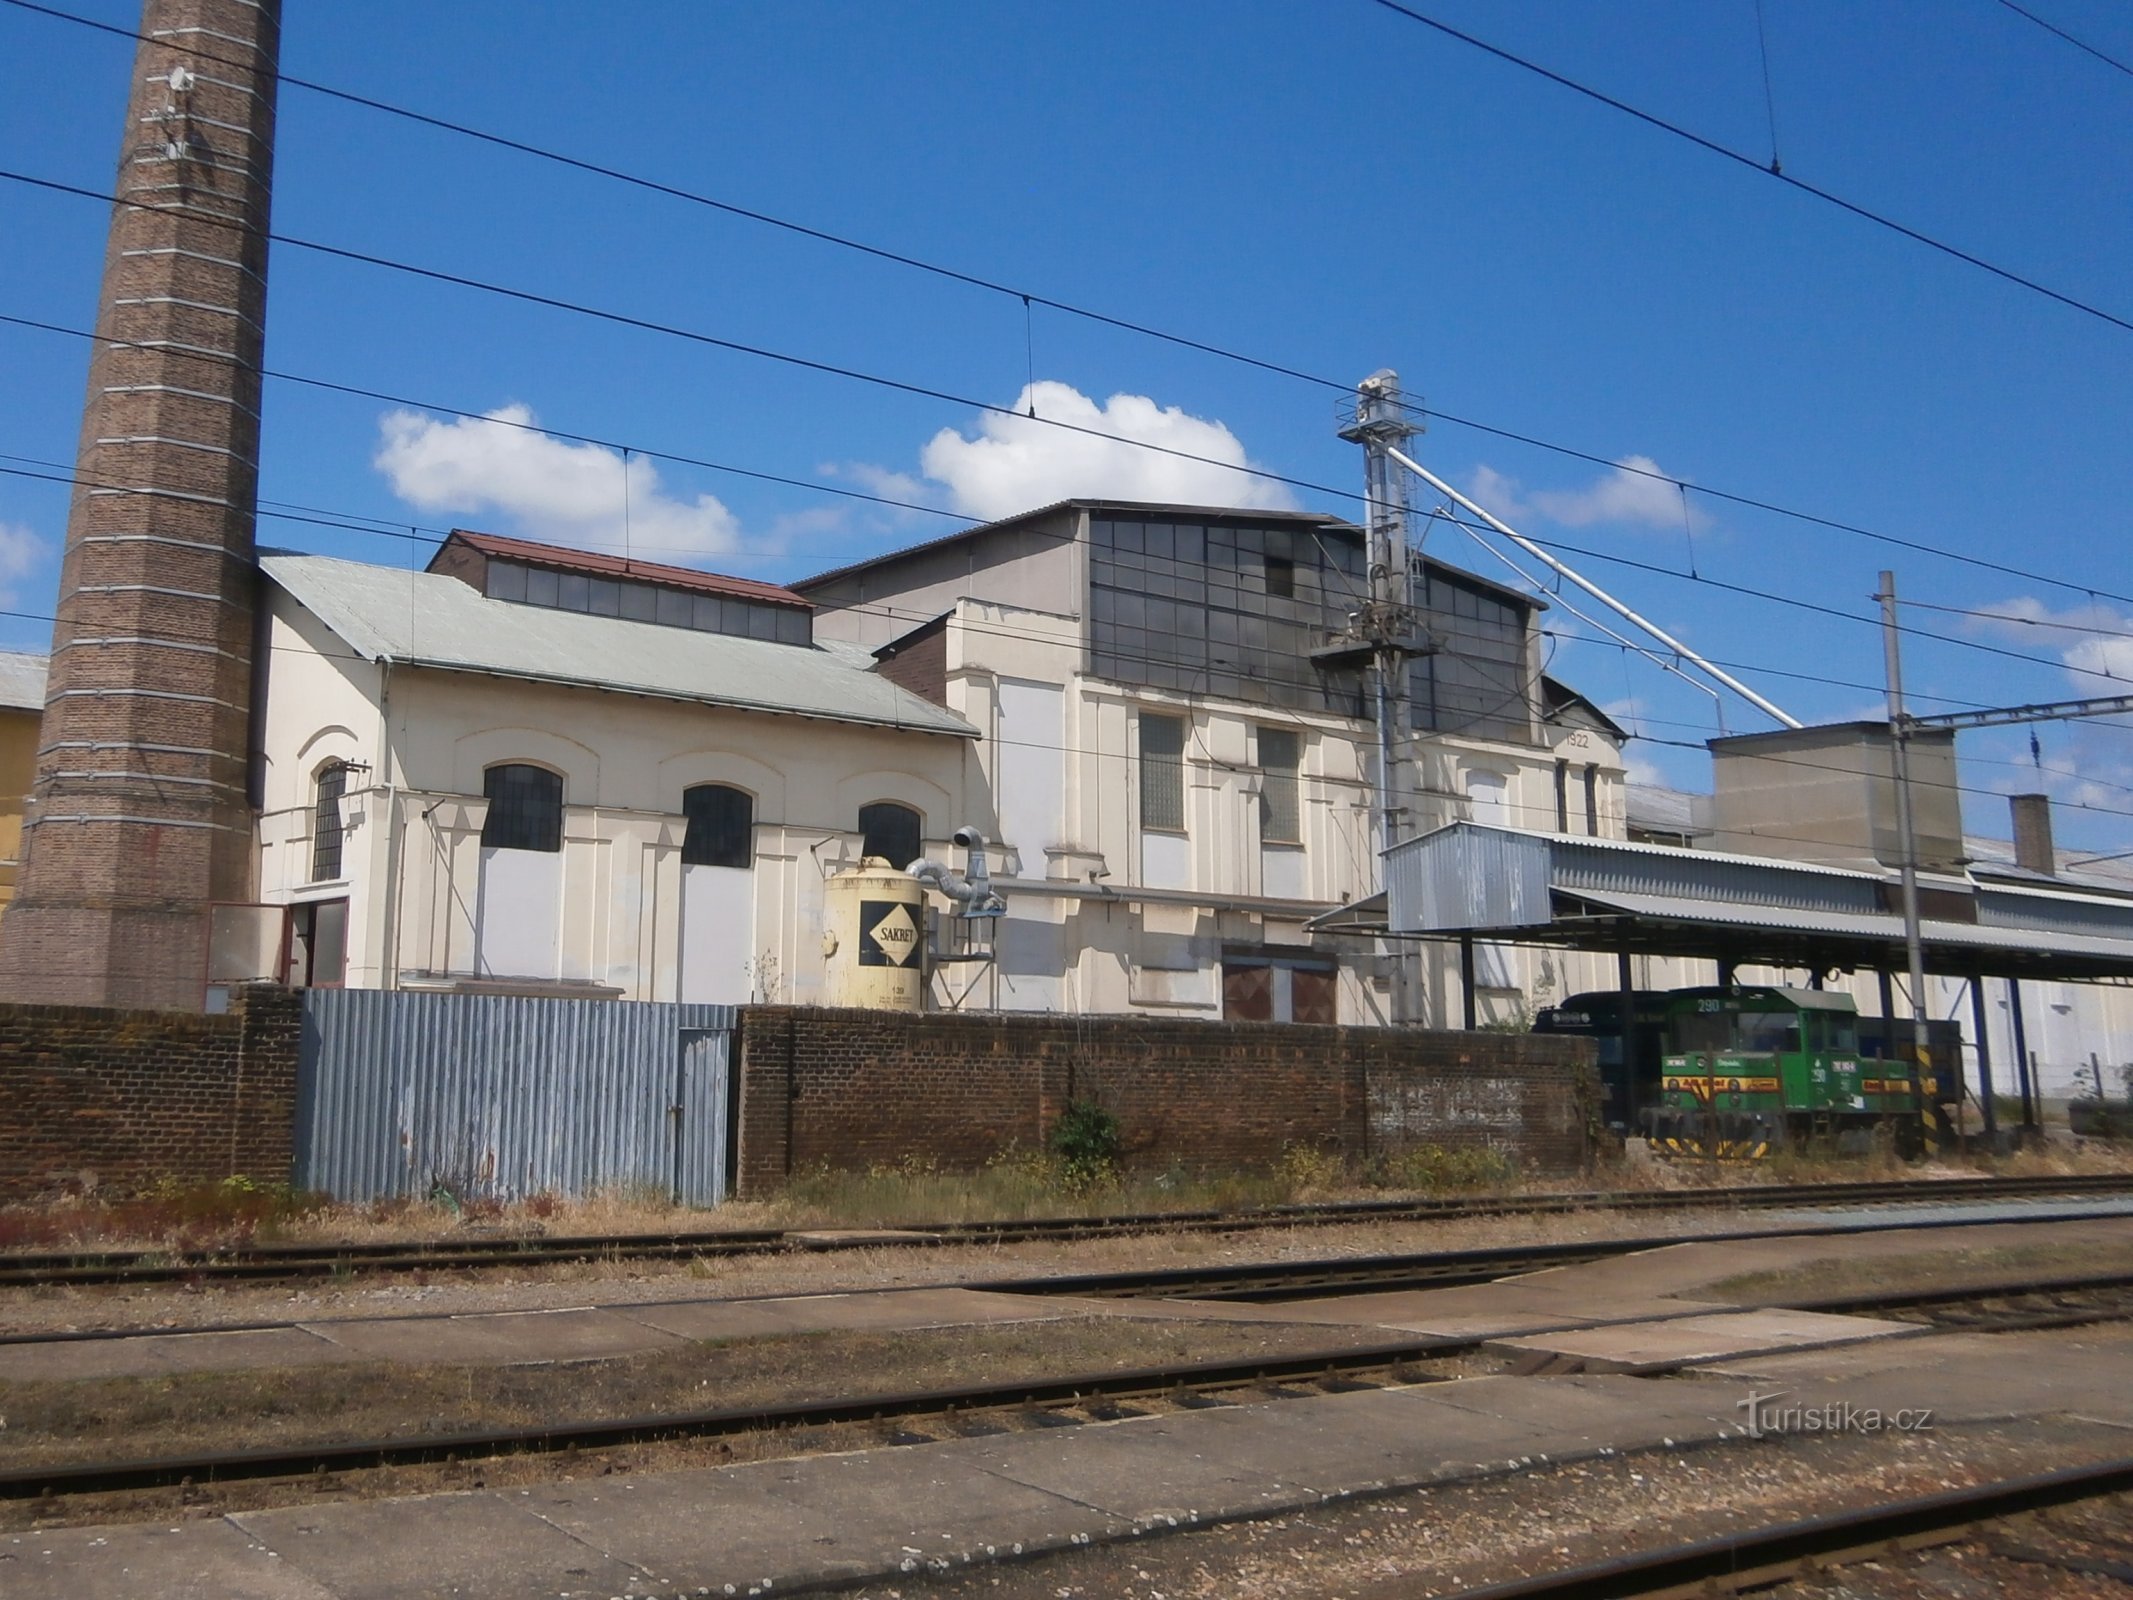 Fælles bondesukkerfabrik (Předměřice nad Labem)